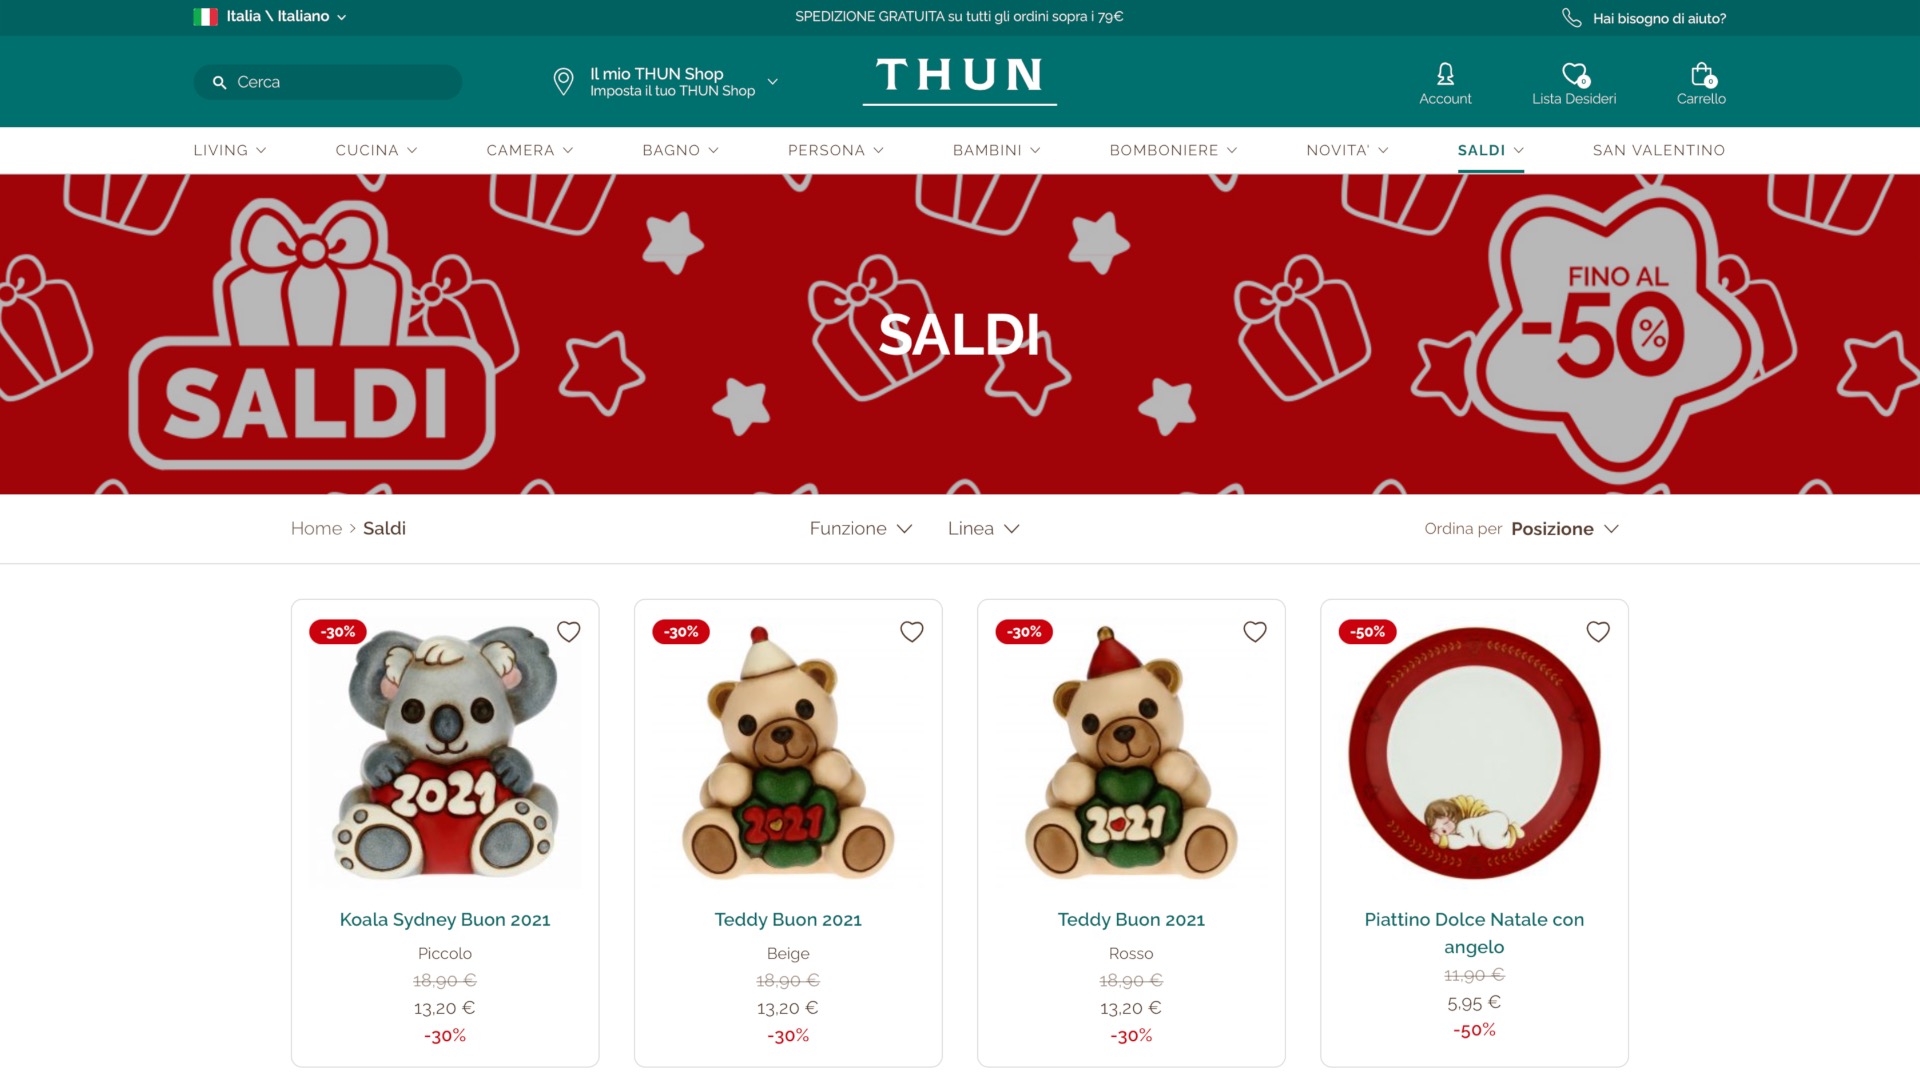 Saldi Thun: sconti del 50% su diversi articoli - MrDeals